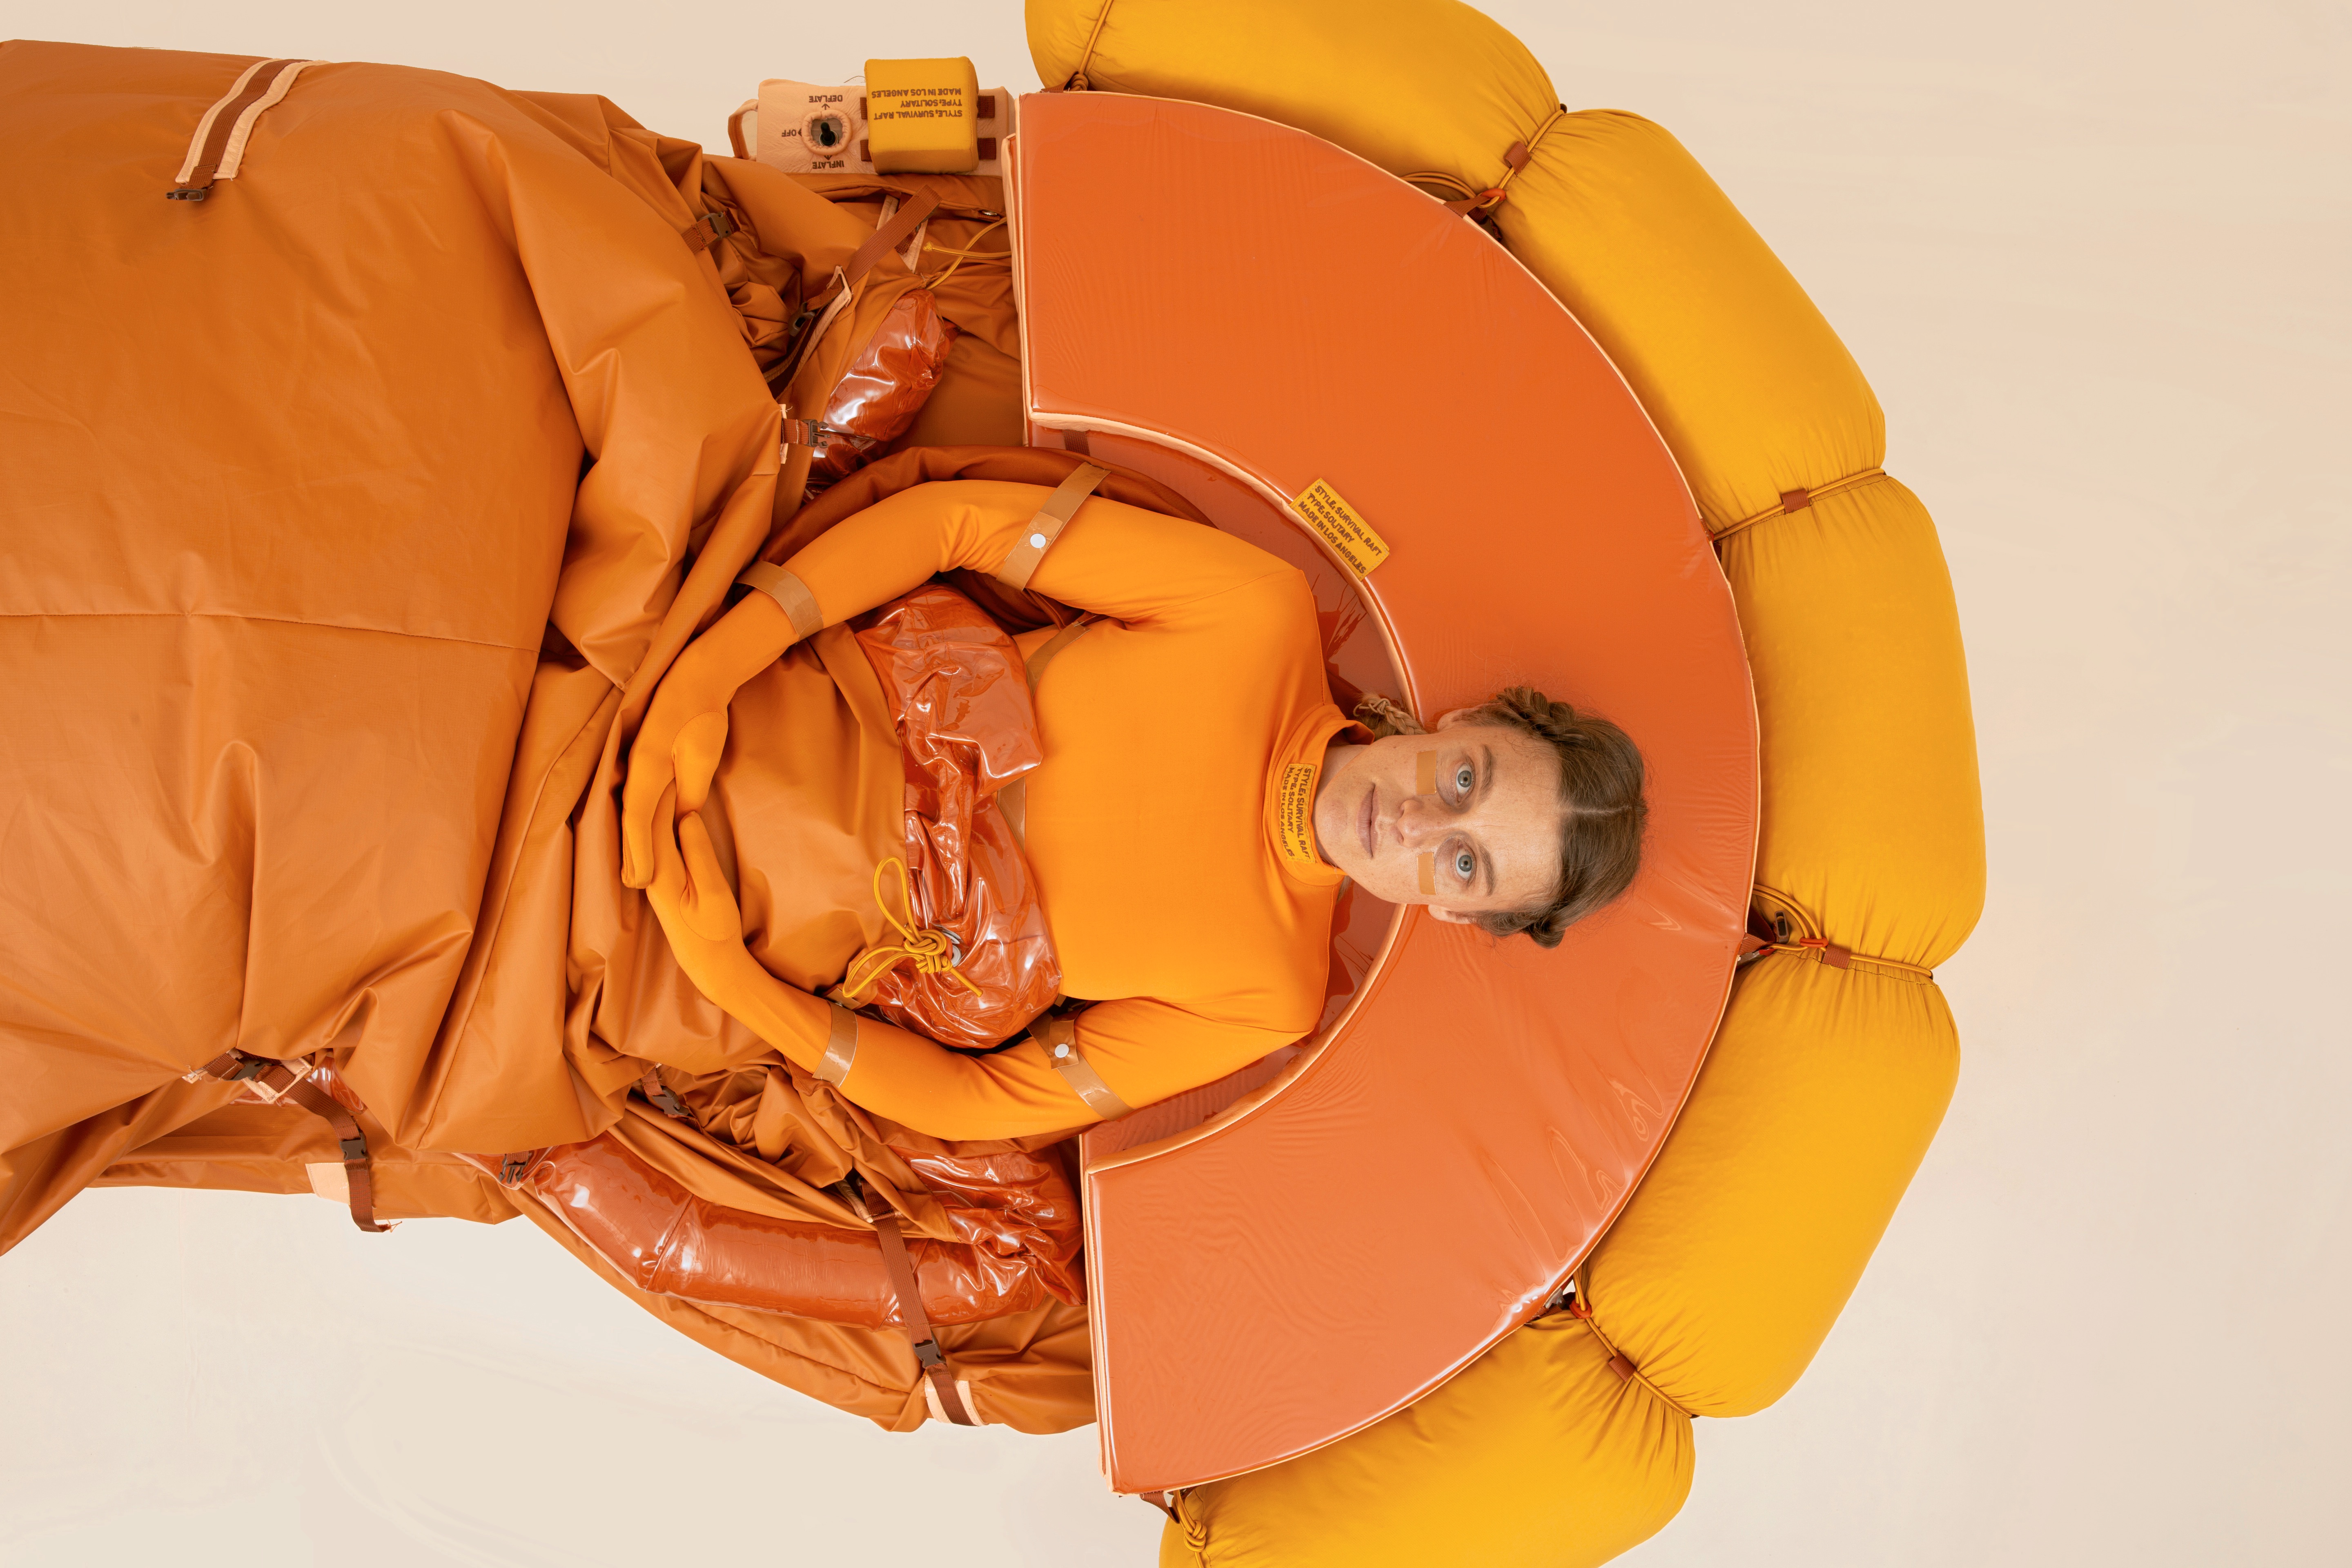 Lucy McRae liegt in ihrer Arbeit "Solitary Survival Raft", eine Art orangefarbenes Rettungsboot.